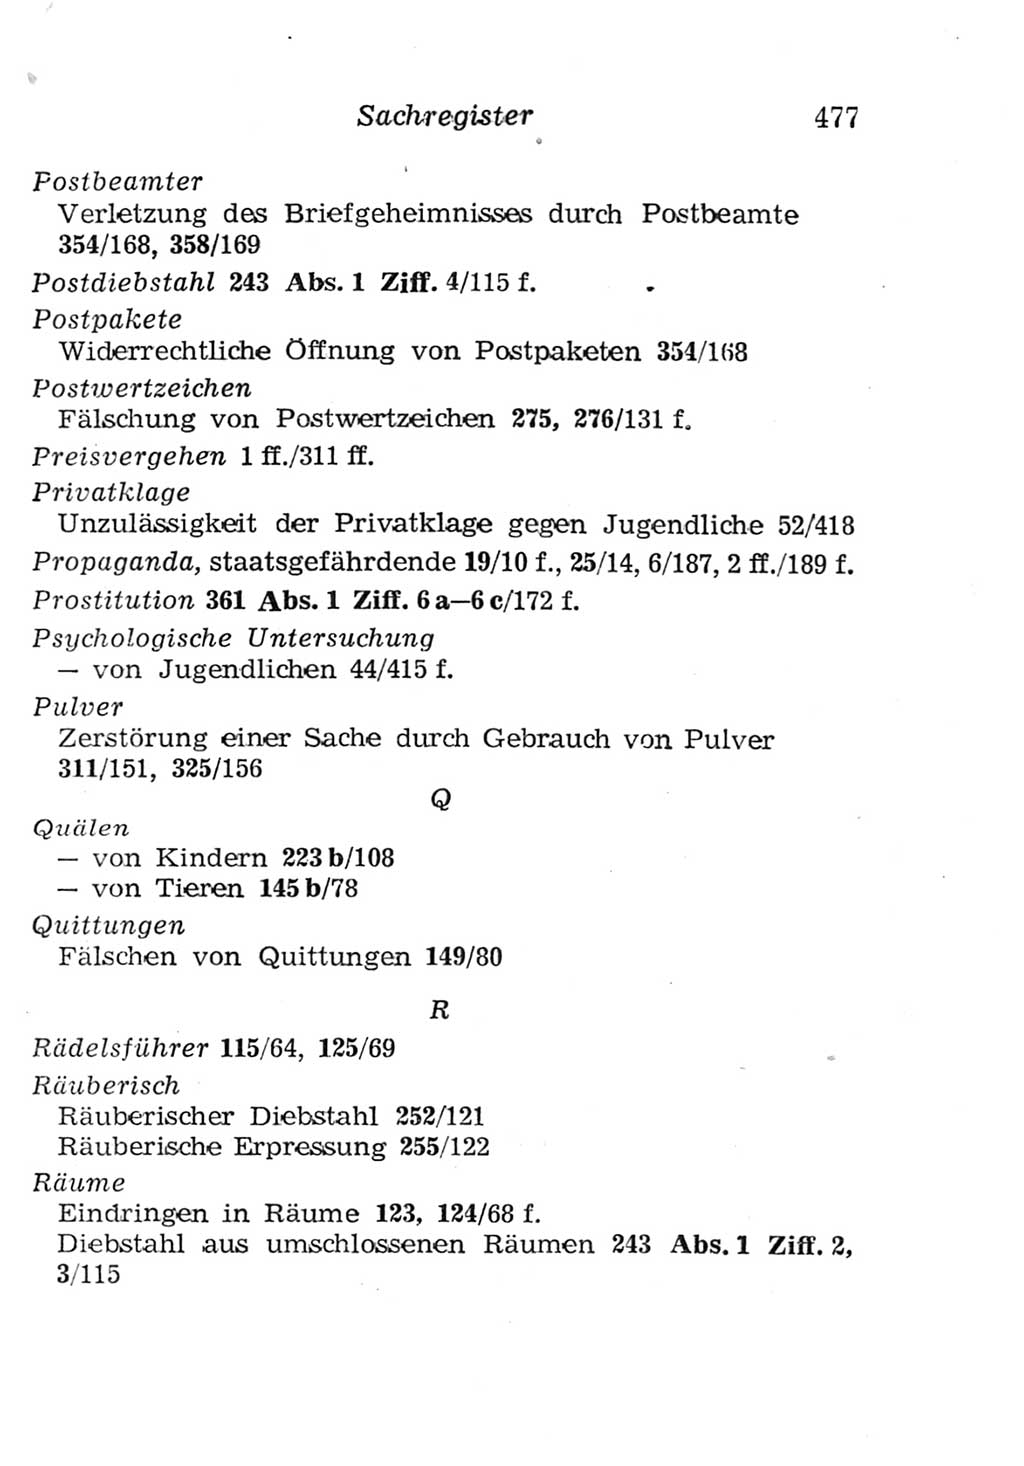 Strafgesetzbuch (StGB) und andere Strafgesetze [Deutsche Demokratische Republik (DDR)] 1957, Seite 477 (StGB Strafges. DDR 1957, S. 477)